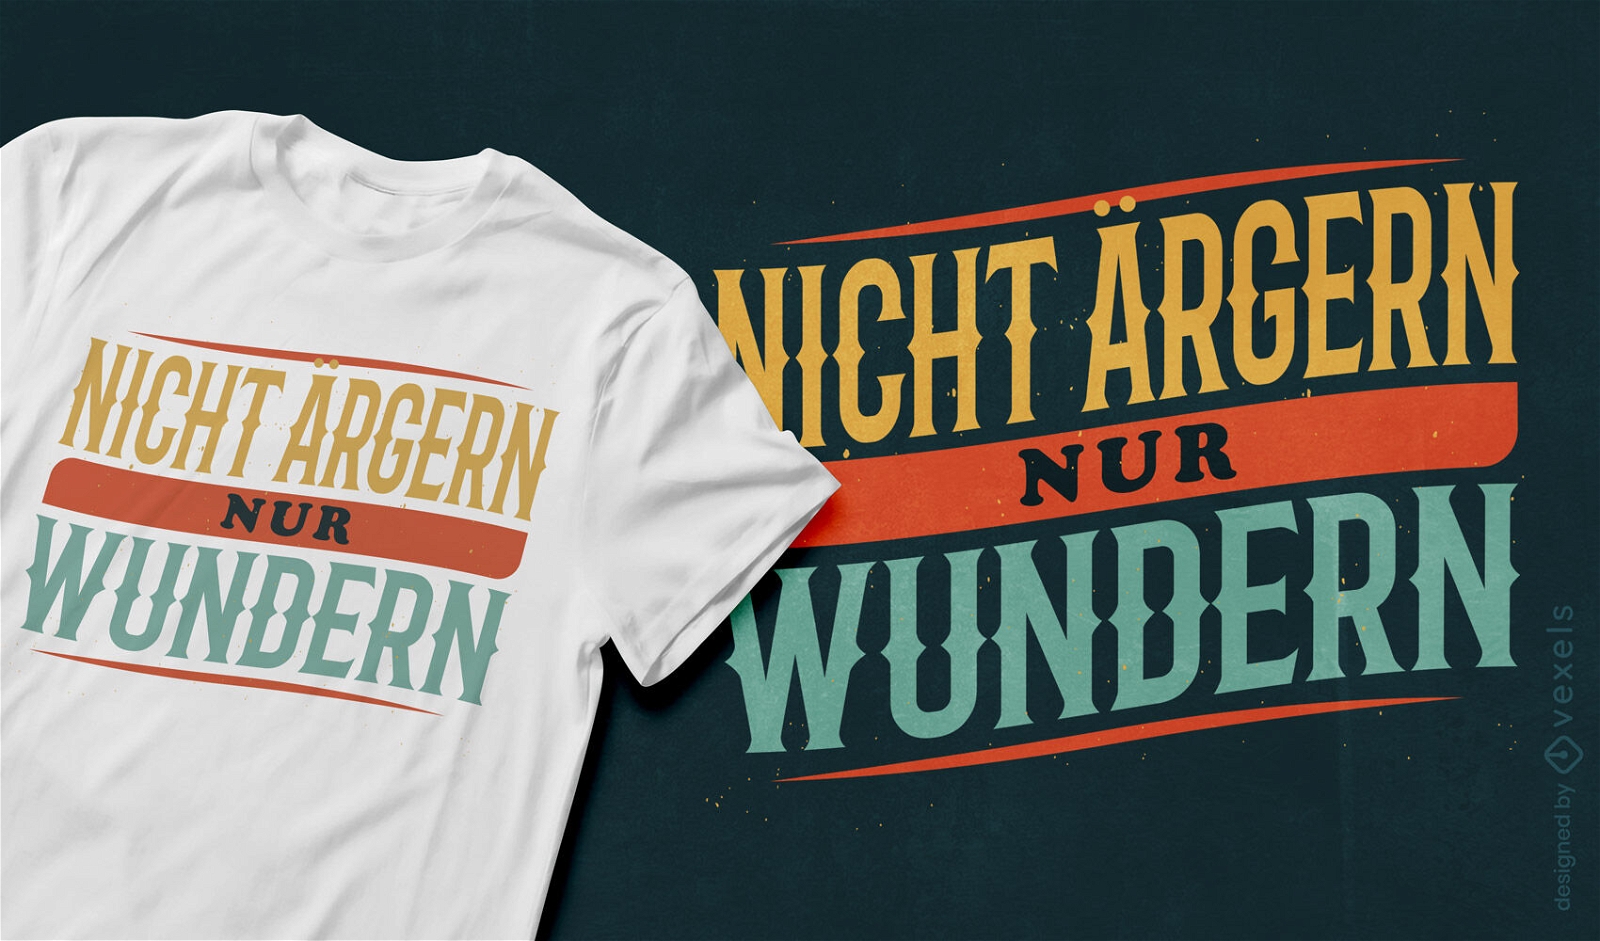 Dise?o de camiseta vintage con cita inspiradora alemana.